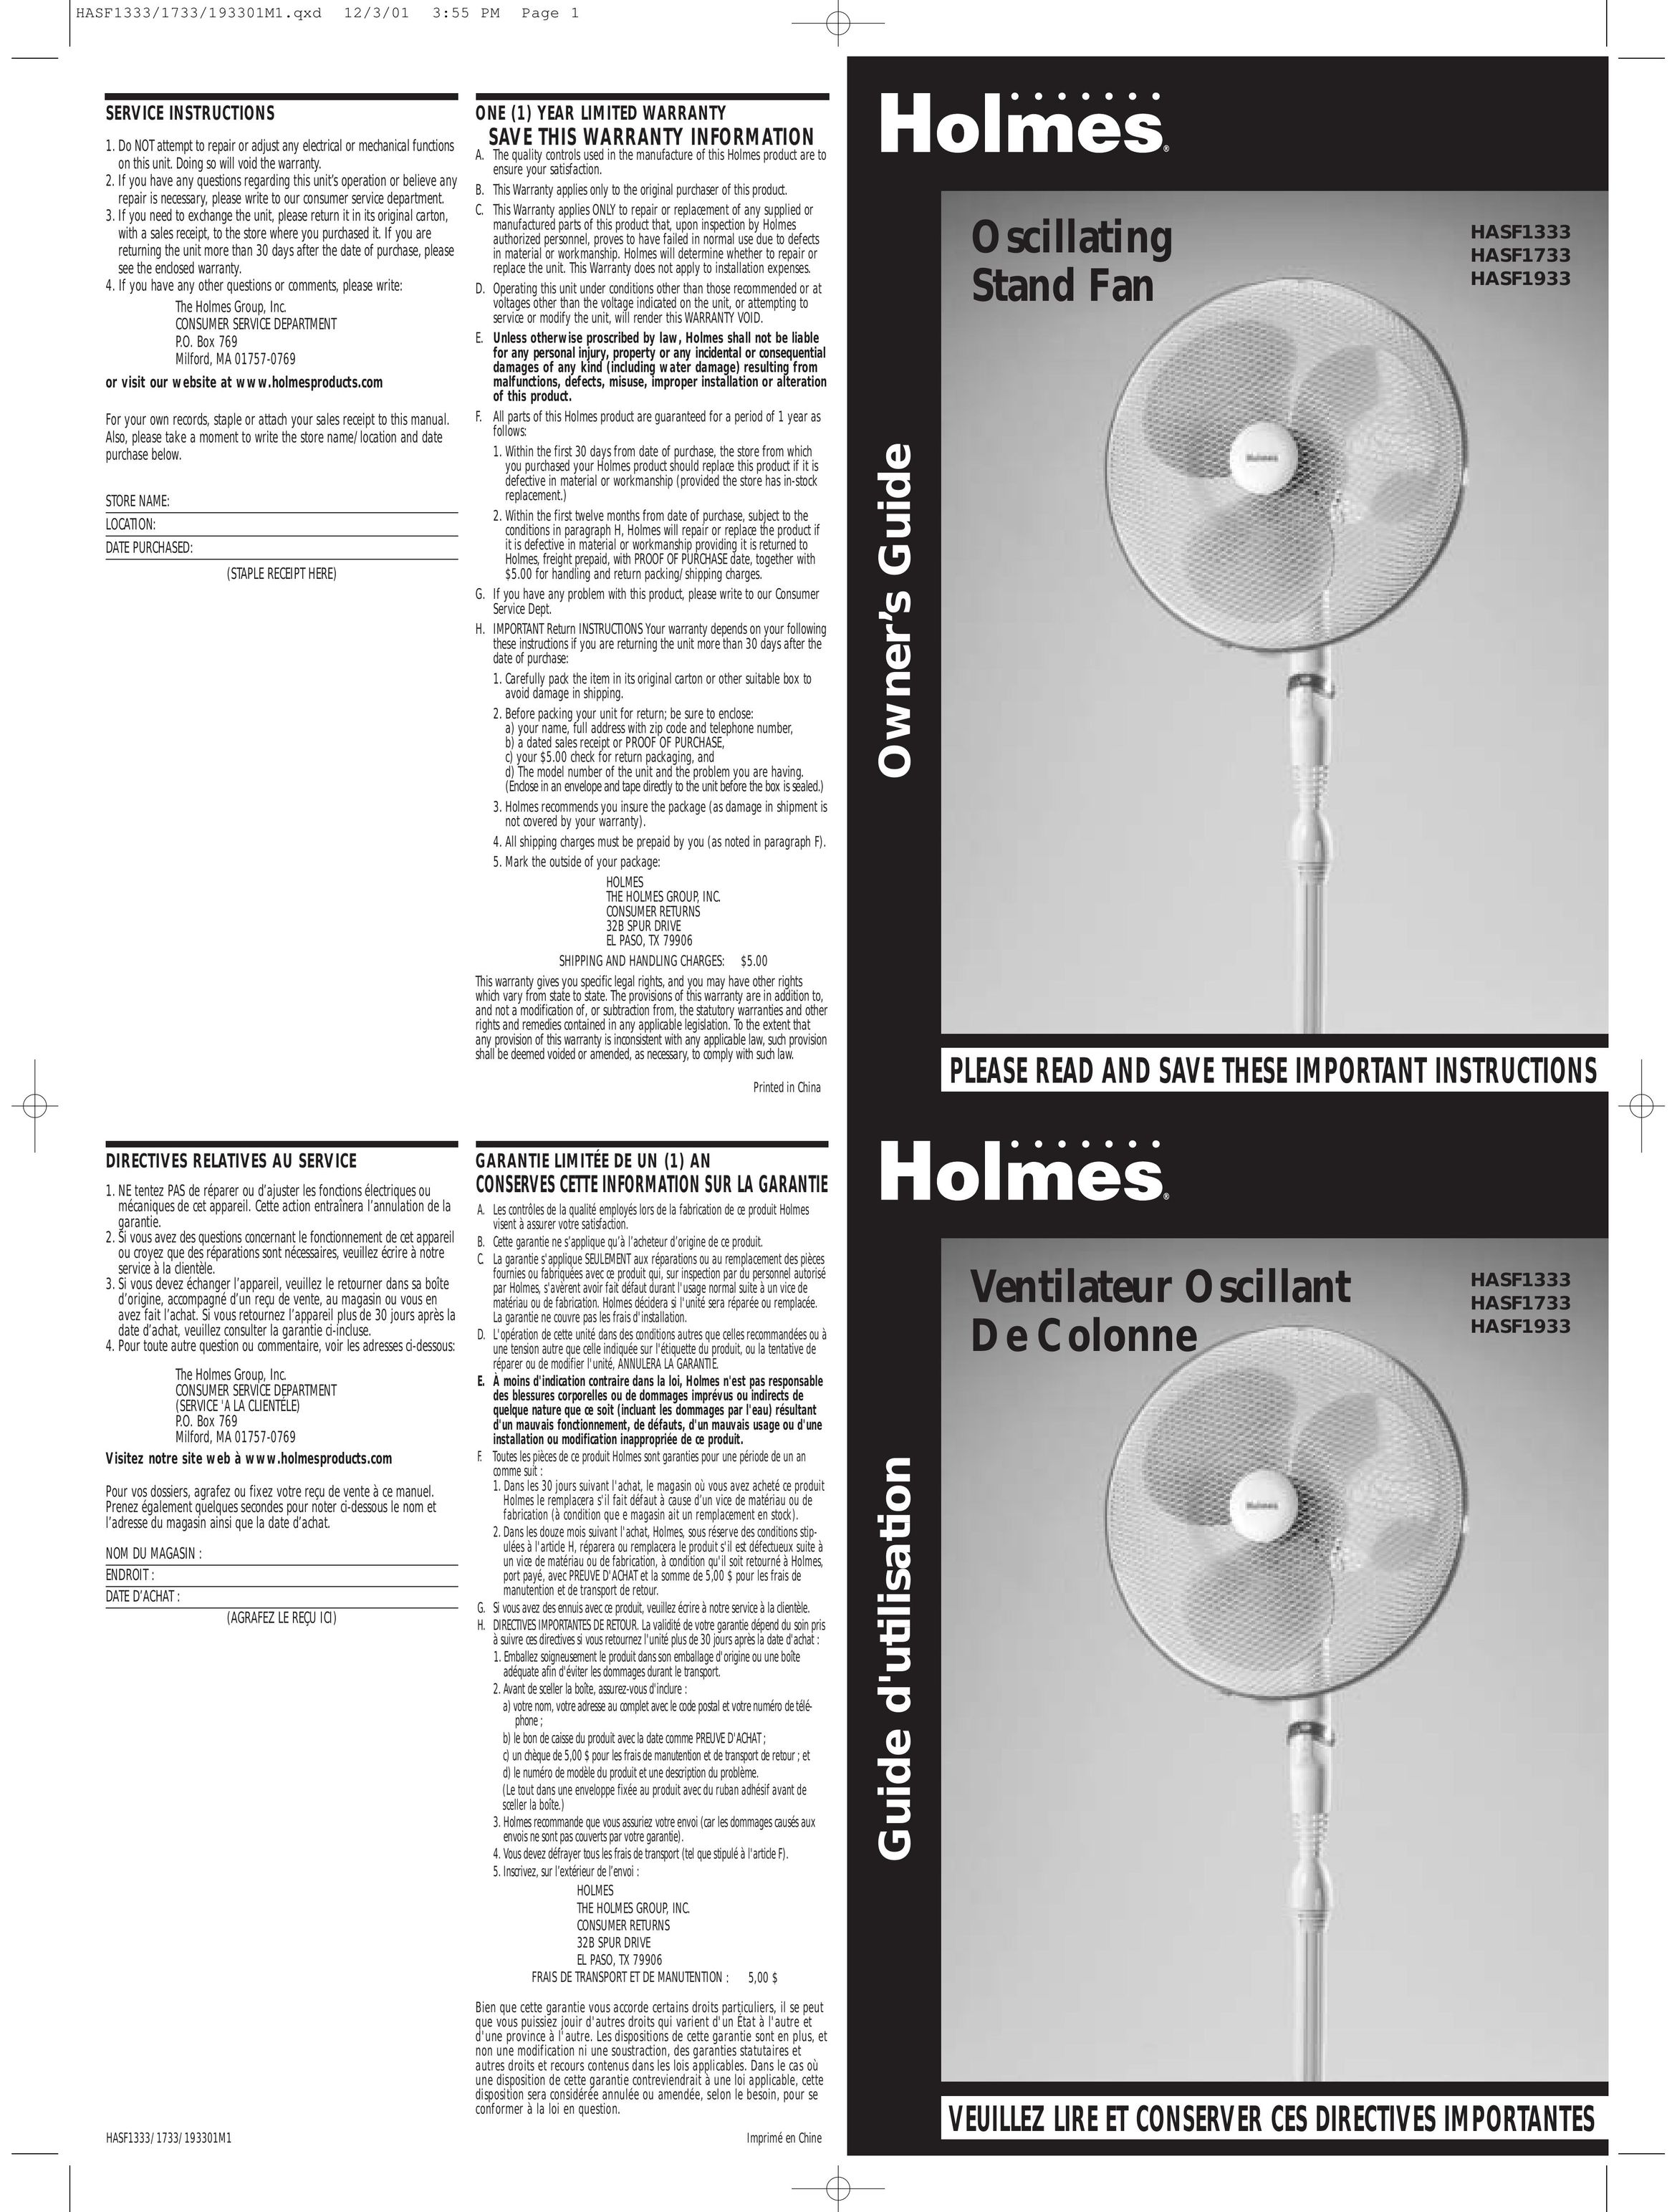 Holmes HASF1933 Fan User Manual